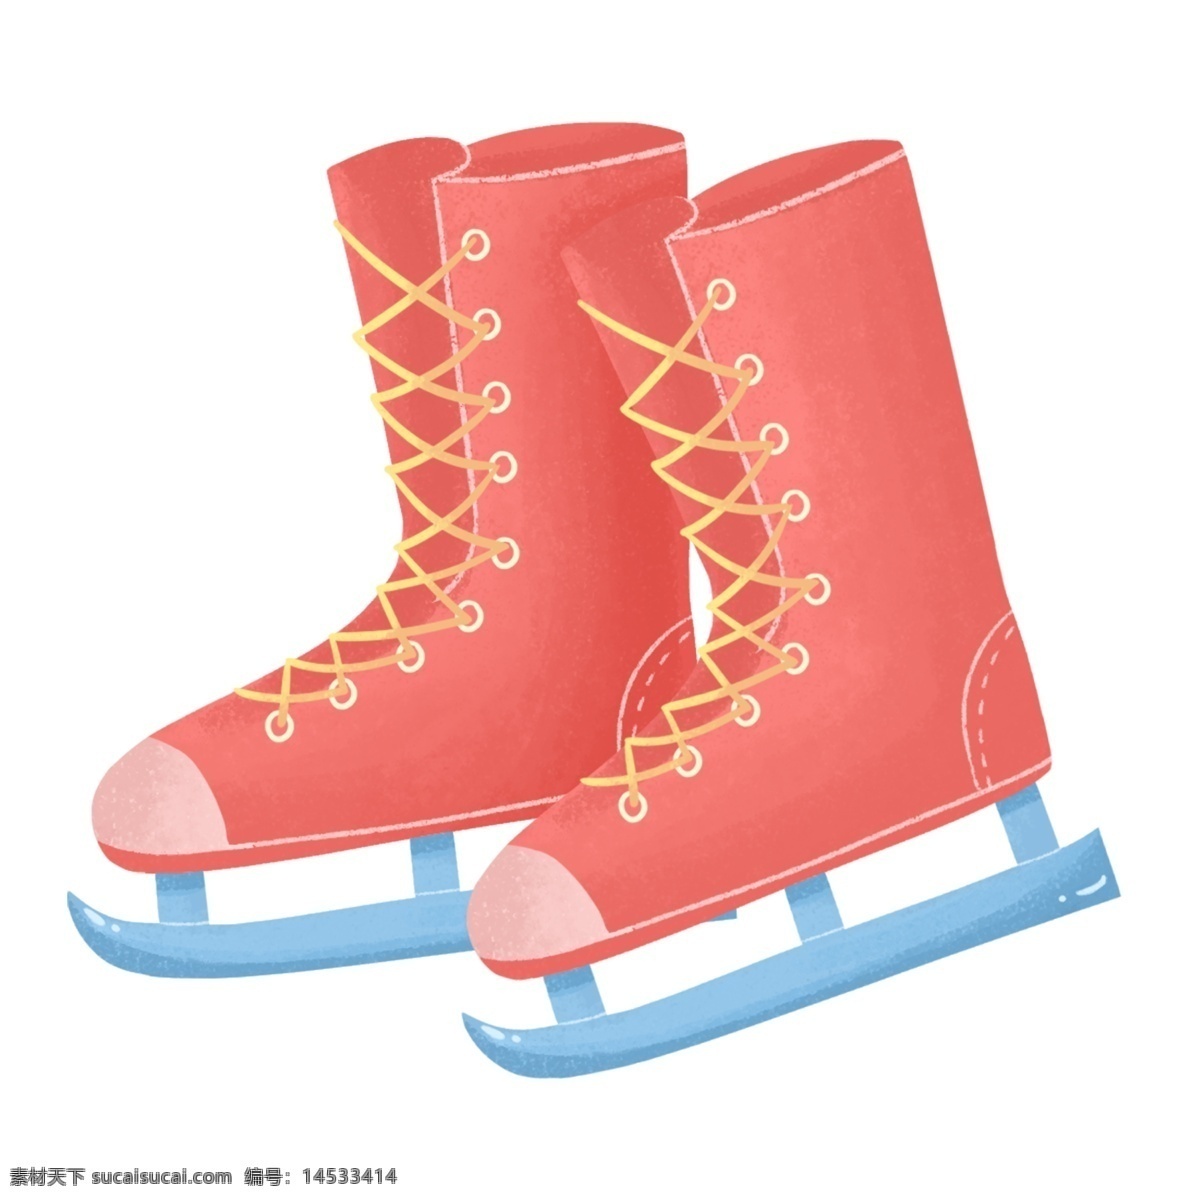 红色 溜冰鞋 手绘 车 好 红色的溜冰鞋 漂亮的溜冰鞋 手绘溜冰鞋 卡通溜冰鞋 溜冰鞋装饰 溜冰鞋插画 滑雪 工具